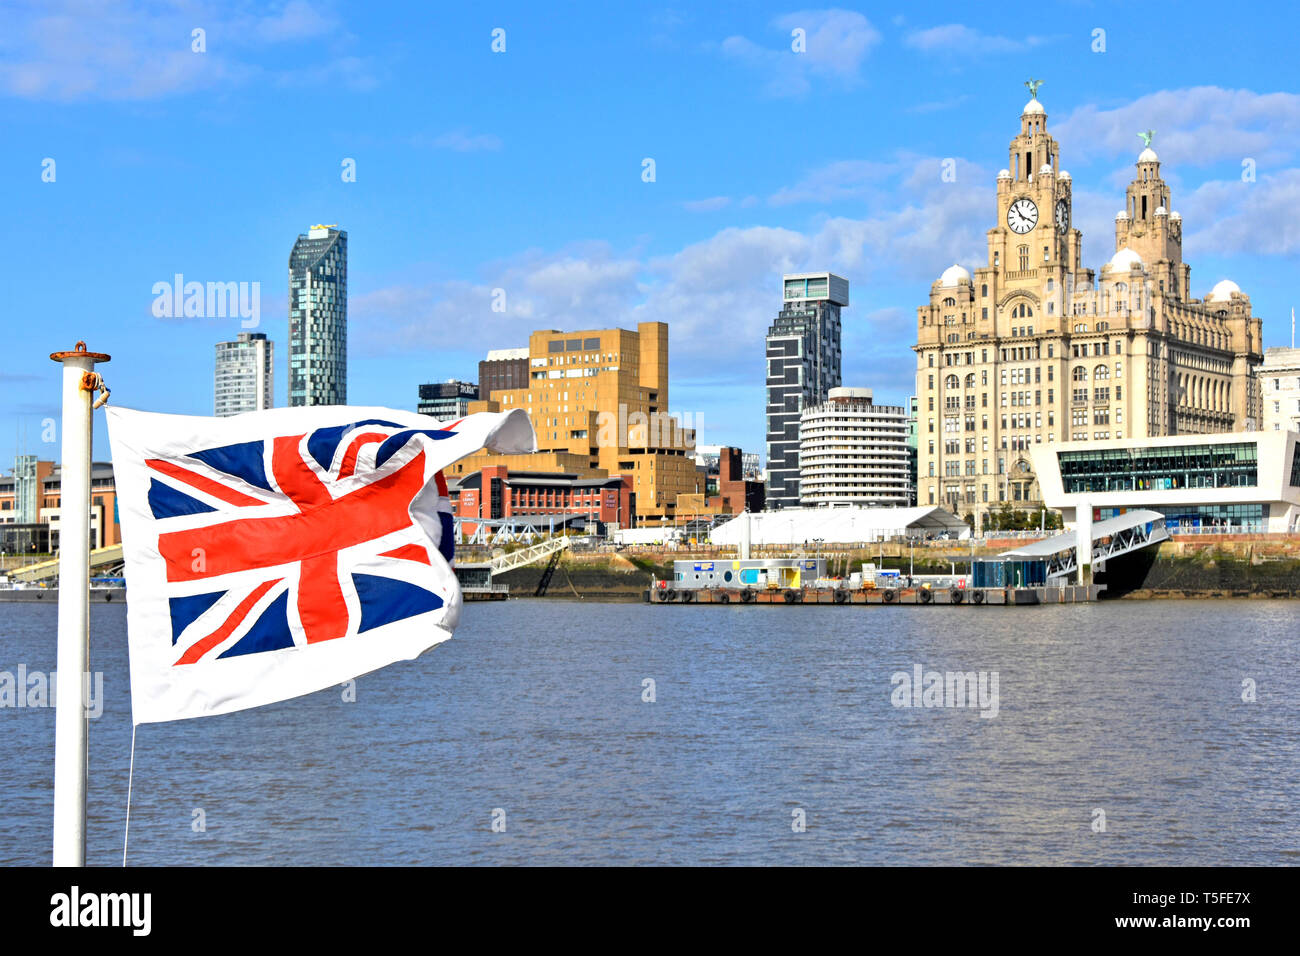 Bandiera Union Jack sul traghetto Mersey, skyline di Liverpool, famoso e storico Royal Liver Building con moderni appartamenti nel Regno Unito Foto Stock